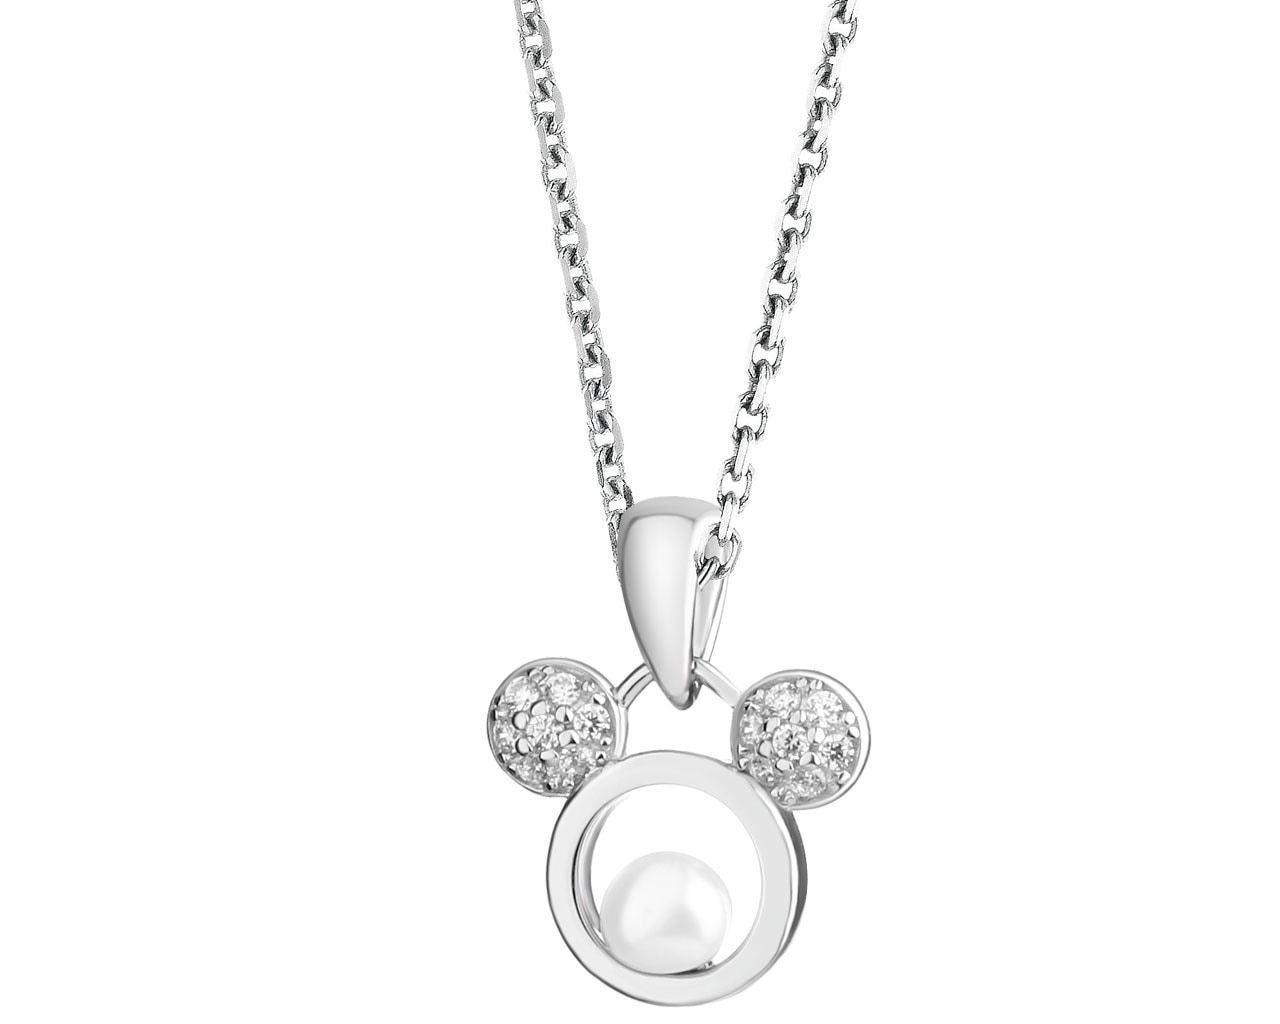 Zawieszka srebrna z perłą i cyrkoniami - Myszka Mickey, Disney